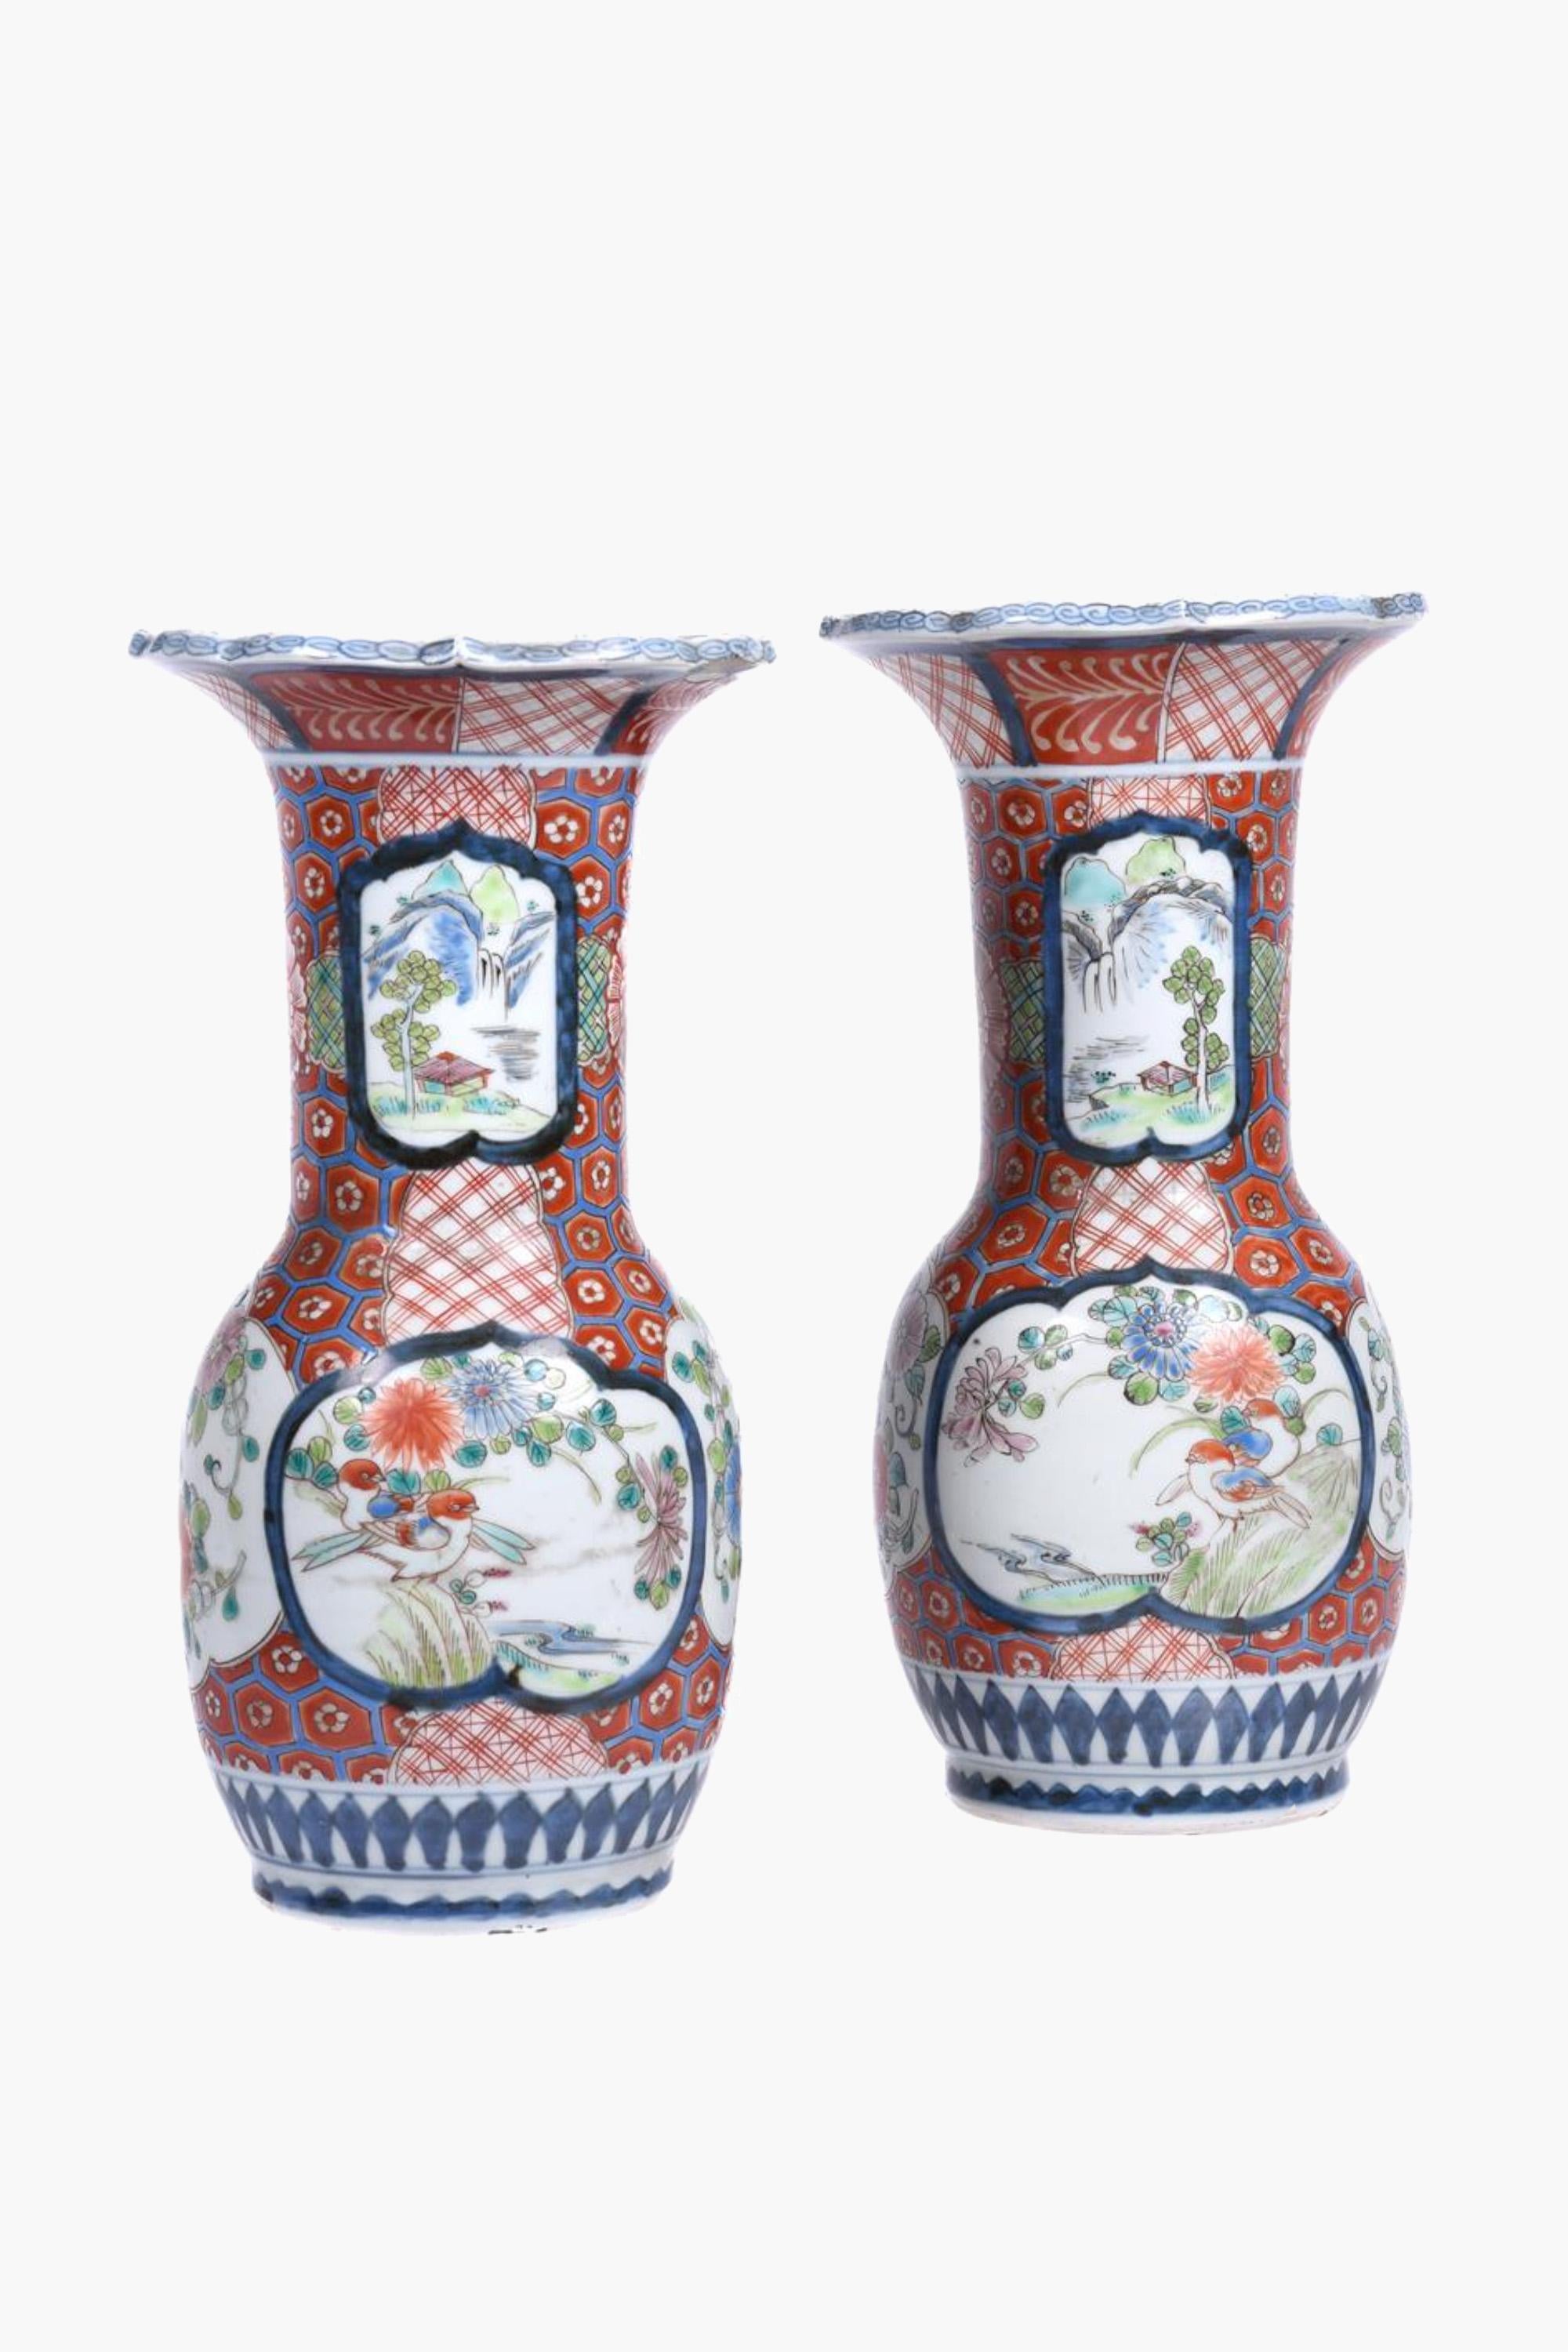 Paire de vases anciens en porcelaine japonaise Arita Imari, disponibles comme lampes.

Vases en porcelaine japonaise de la période Meiji (1868-1913) décorés d'émaux brillants dans les couleurs Imari. Le corps est décoré d'une alternance de vignettes